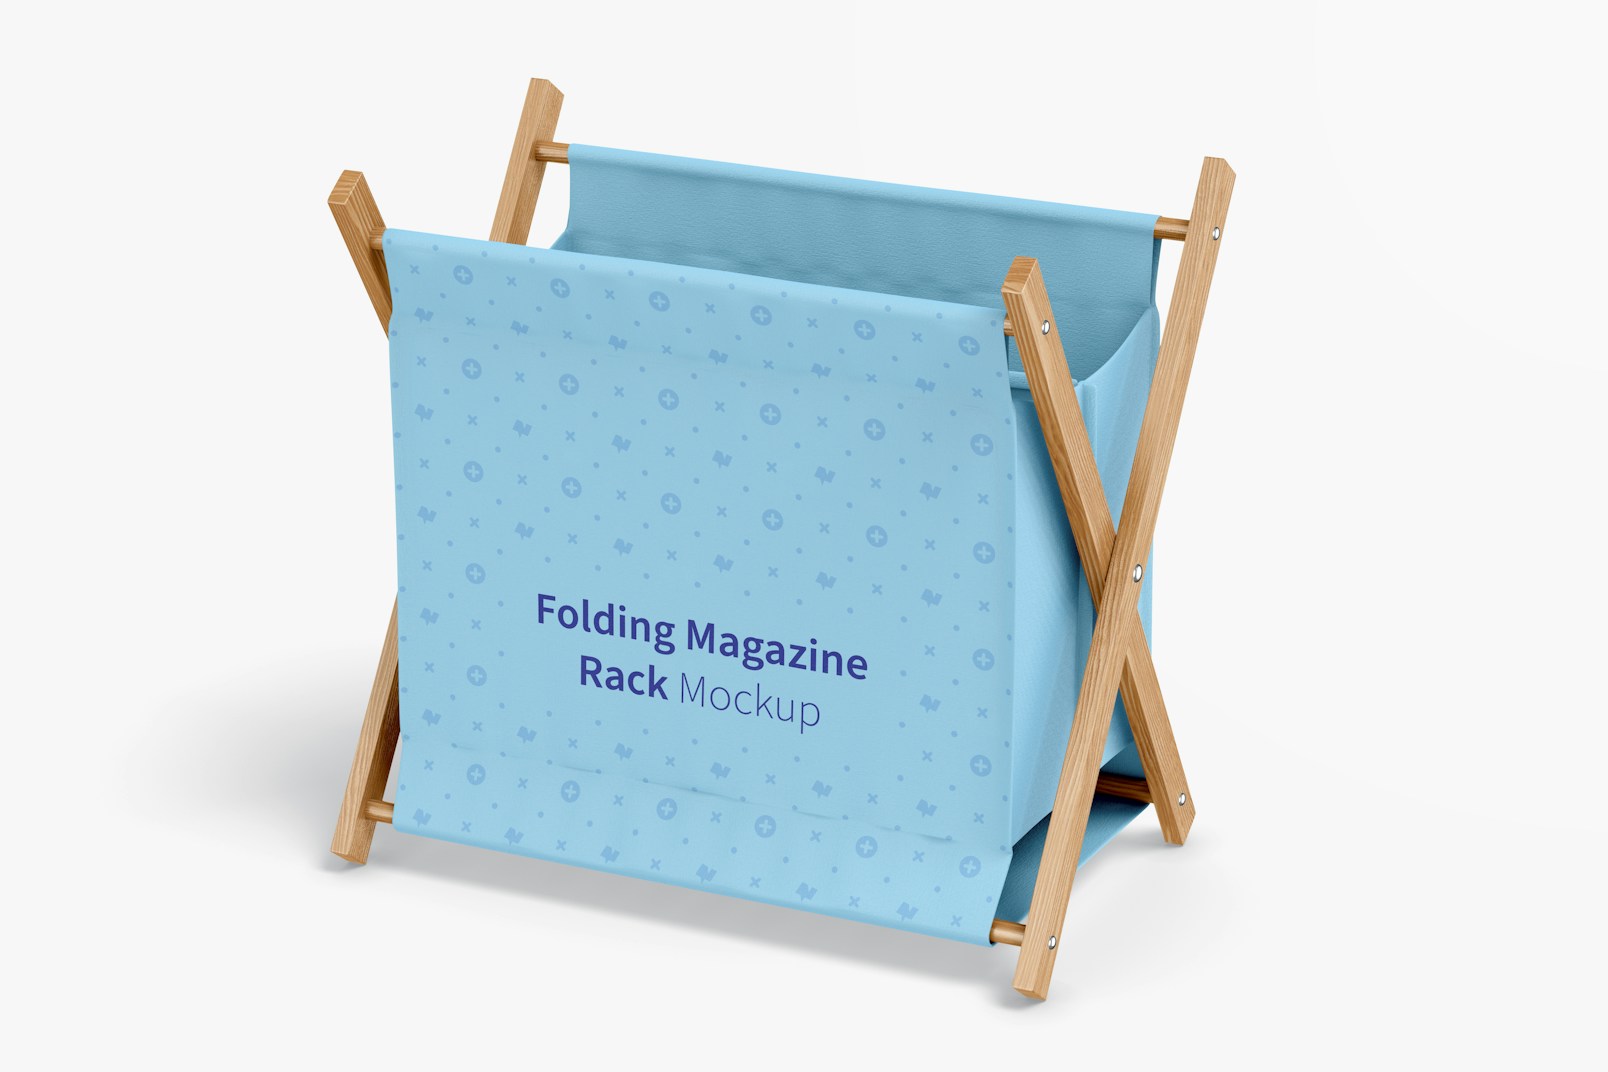 Folding Magazine Rack Mockup